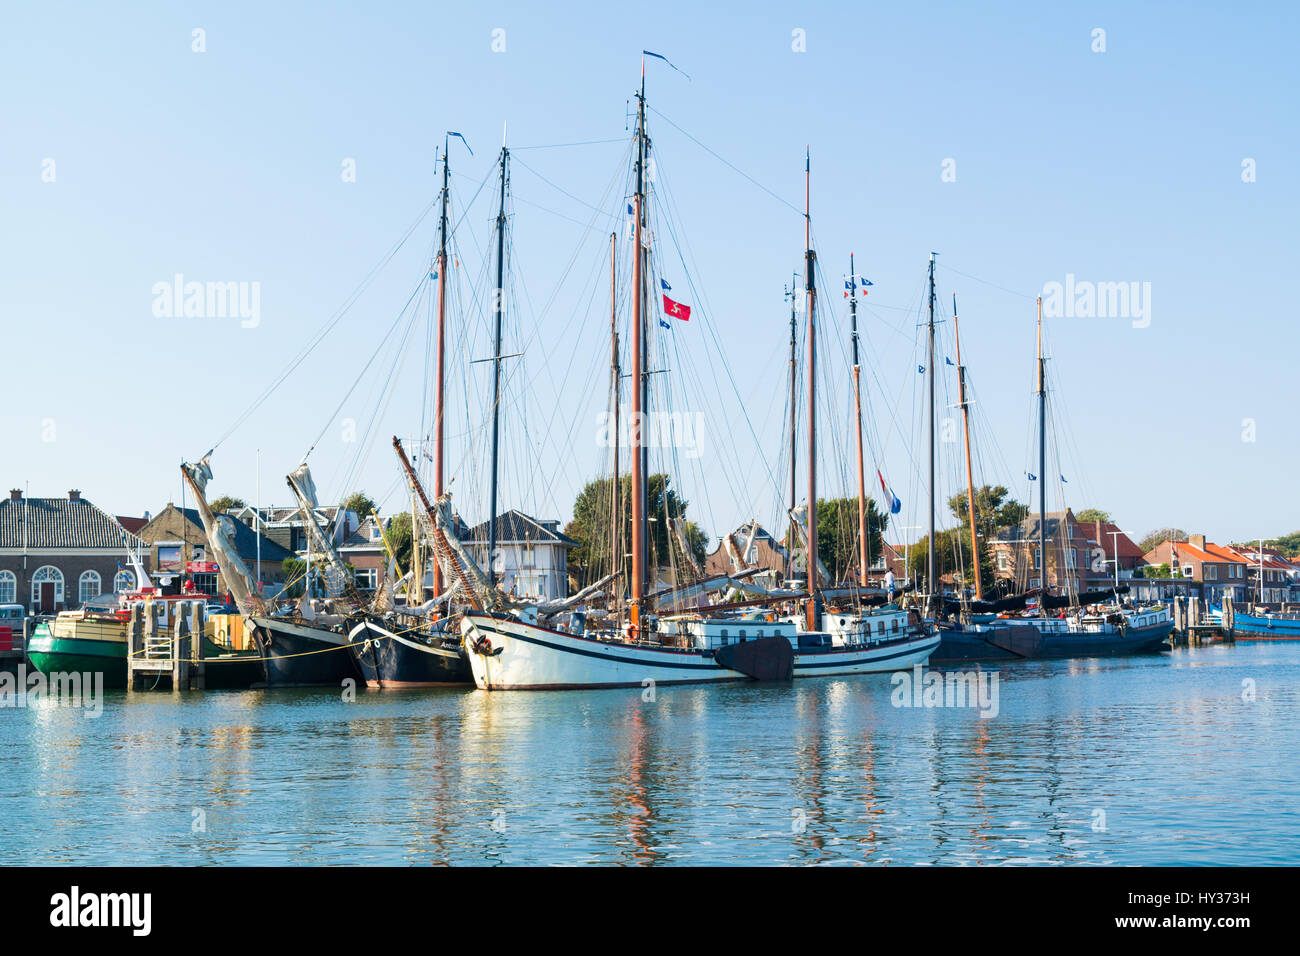 Traditionelle Segelschiffe der braunen Flotte im Hafen am Wattenmeer Insel Terschelling, Niederlande Stockfoto